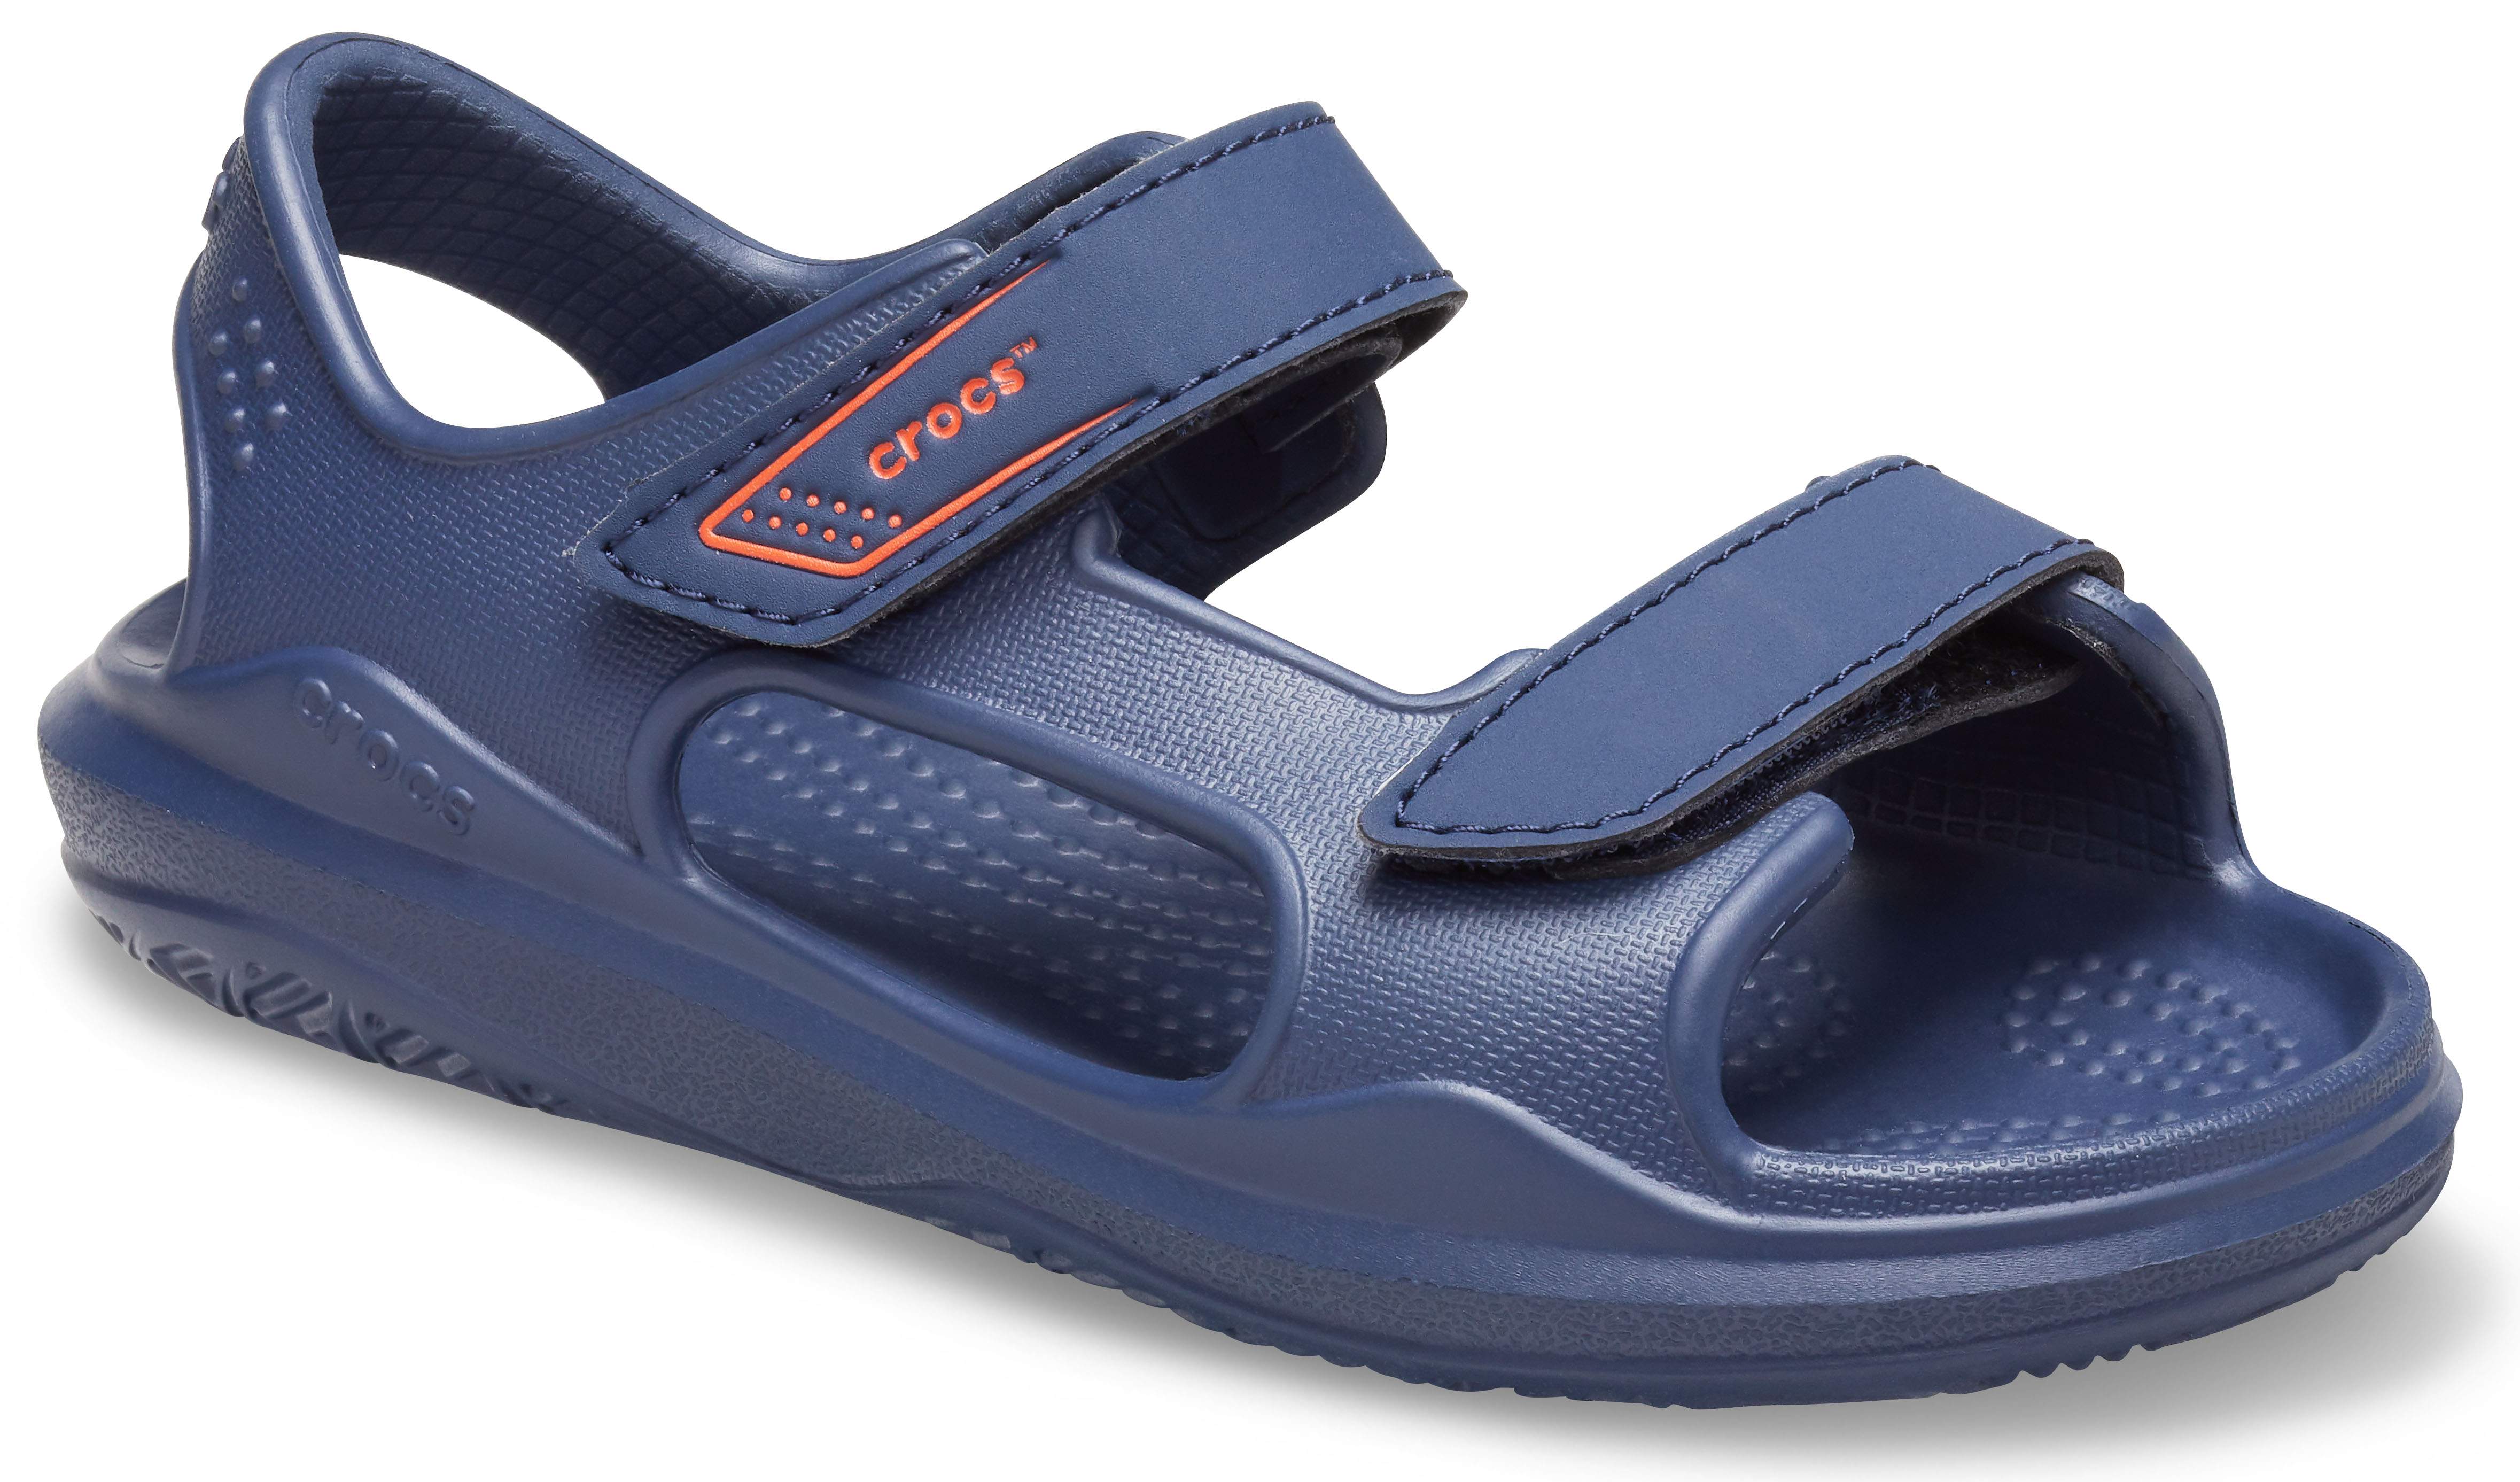 boys crocs sandals